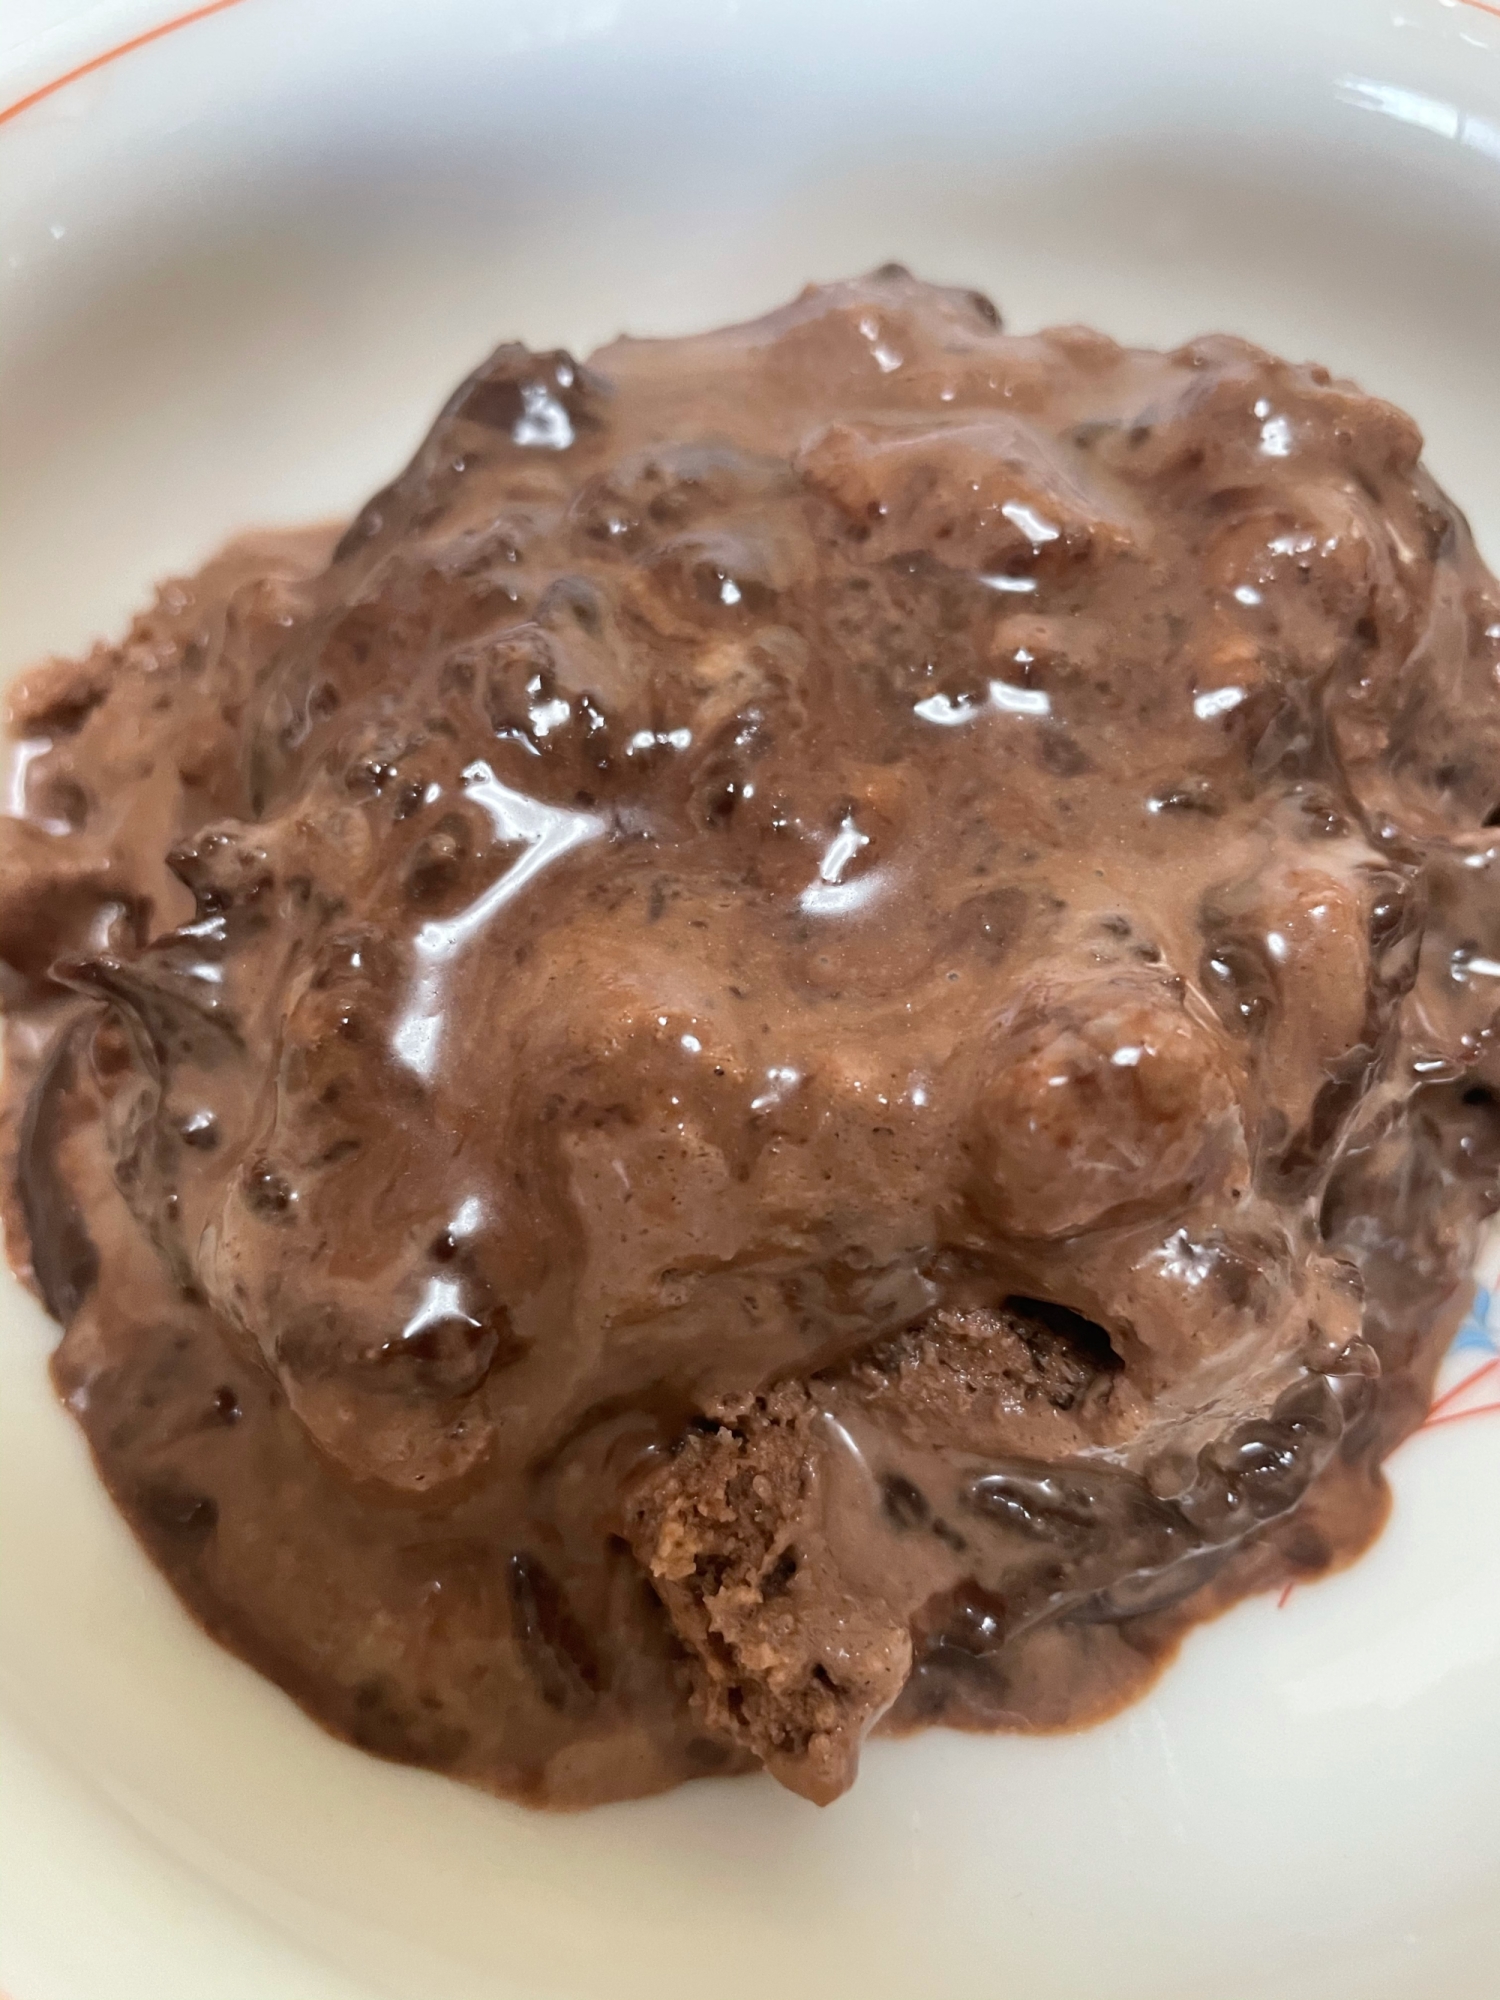 ココアとチョコレートでアイスクリーム風